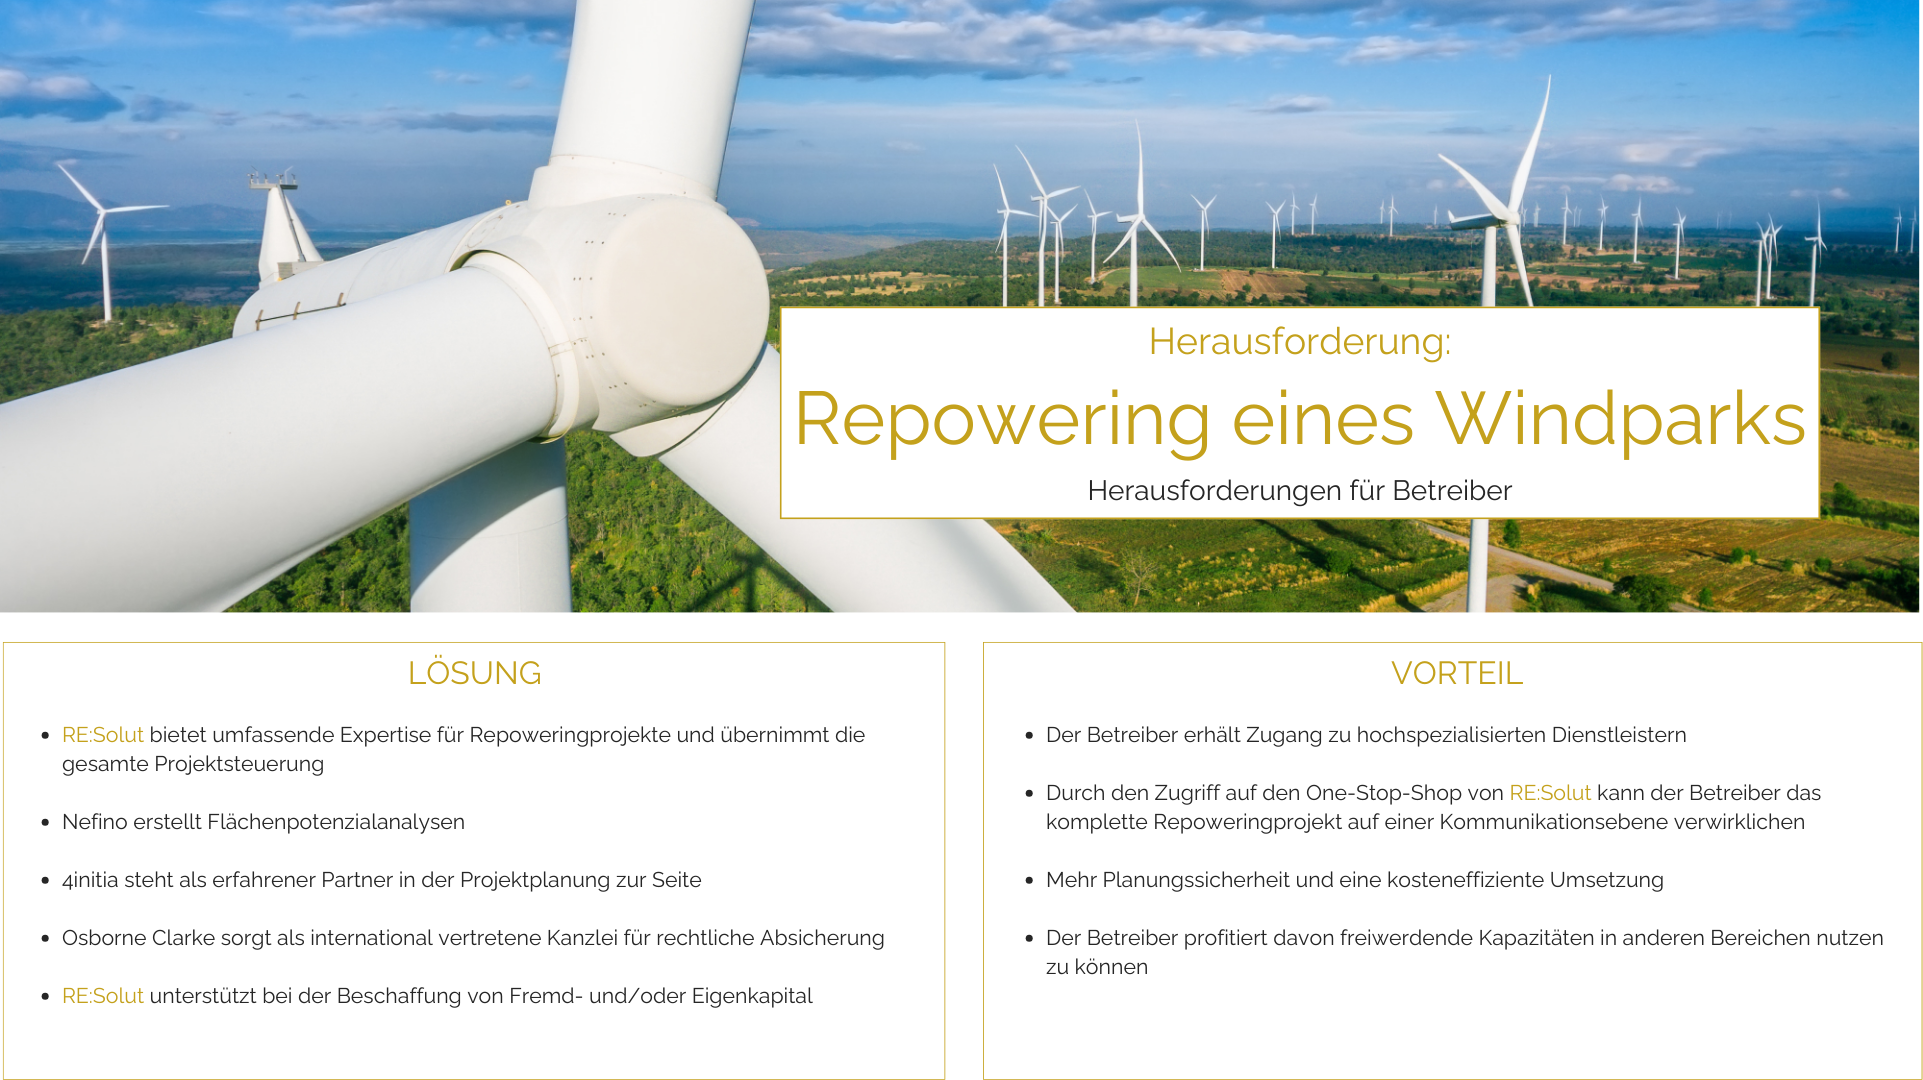 RESolut-Repowering-eines-Windparks